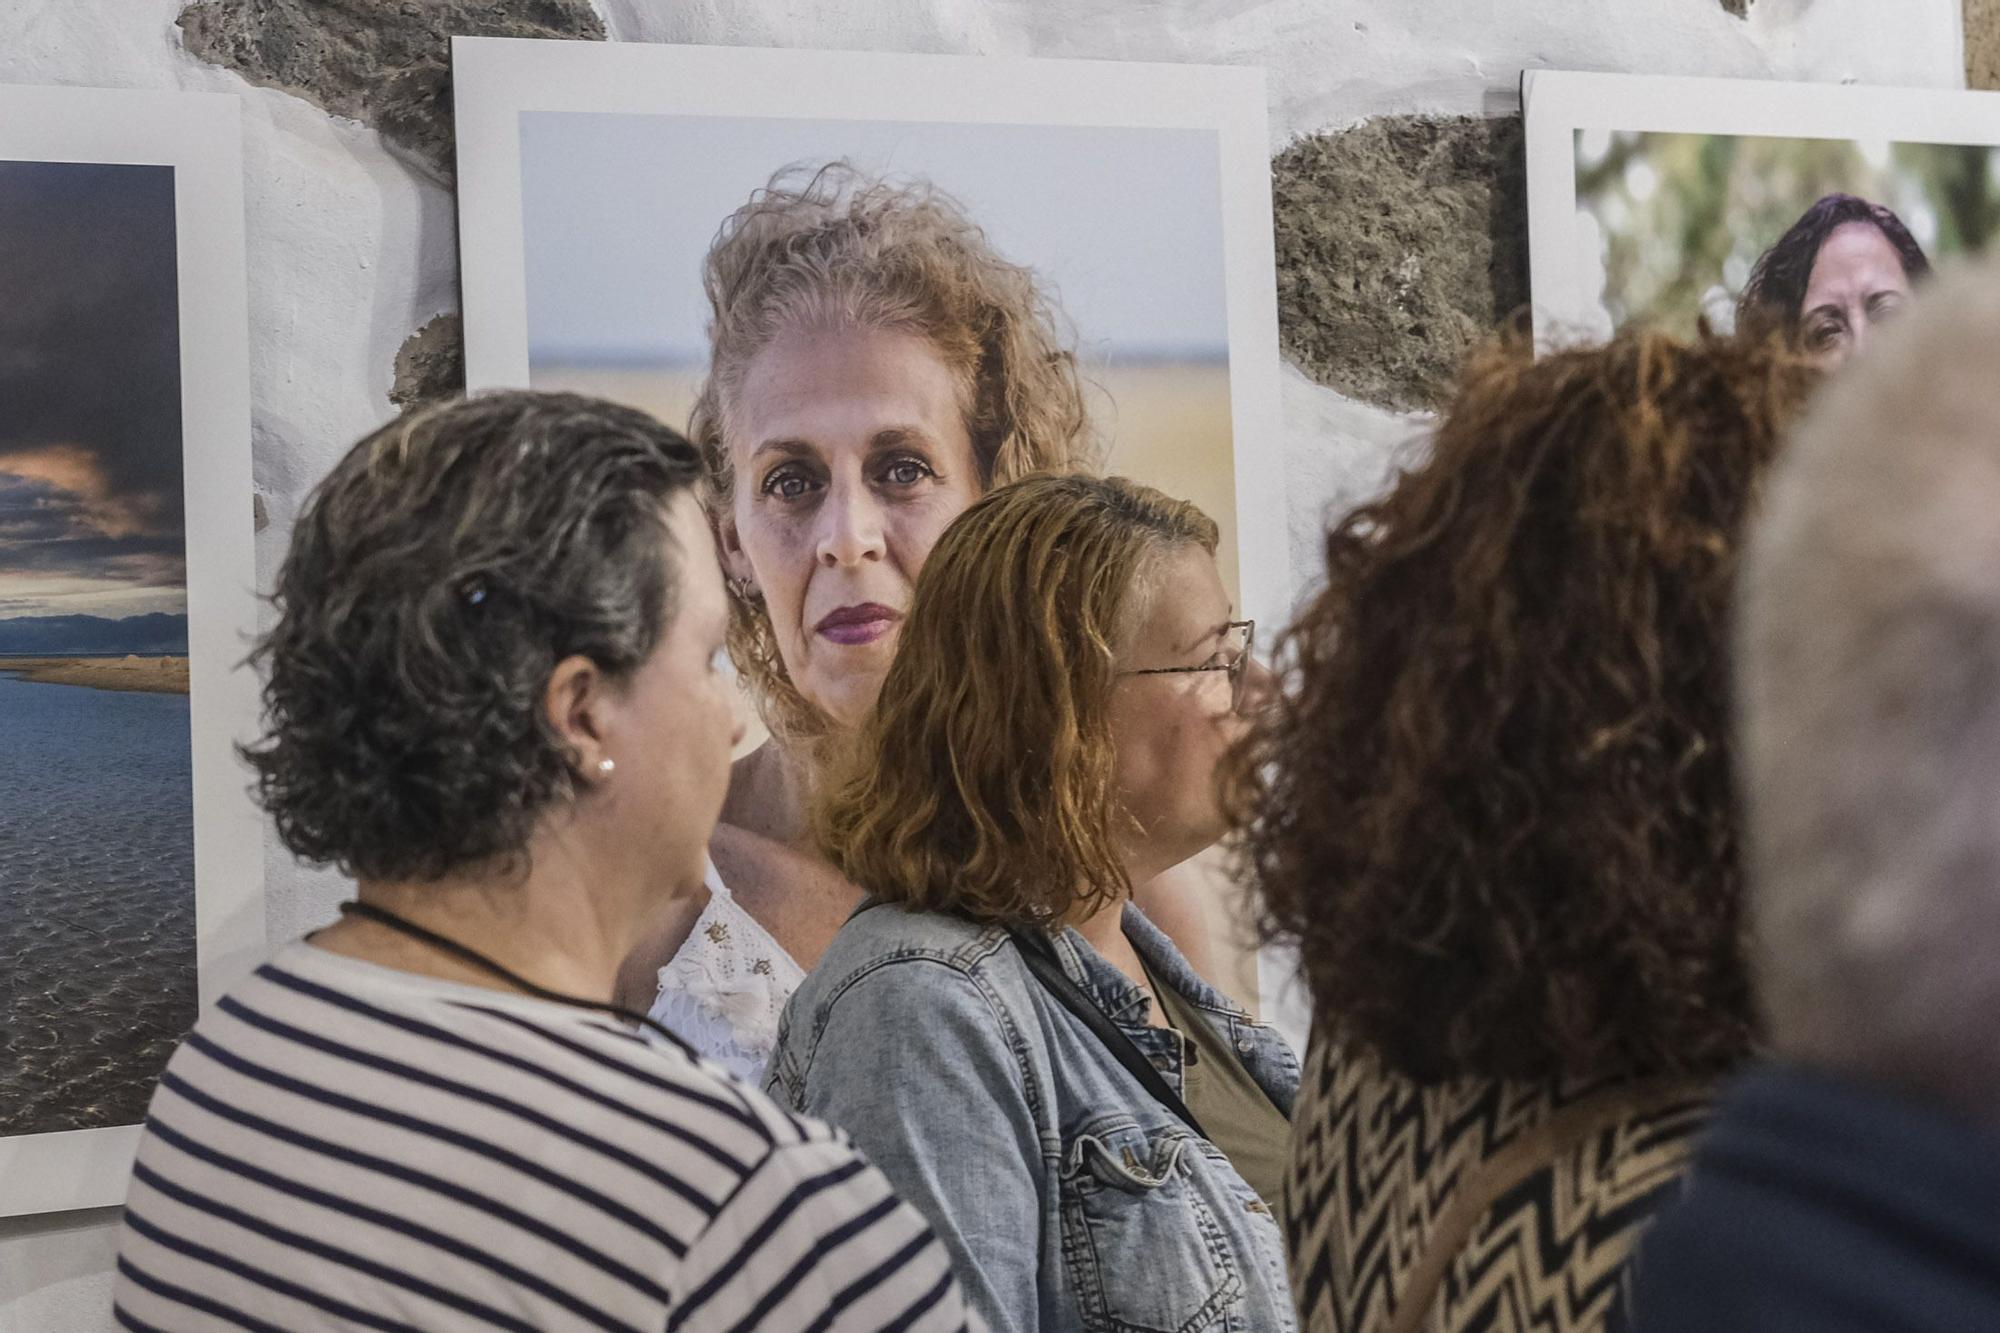 Exposición fotográfica 'Mi identidad' sobre mujeres cuidadoras